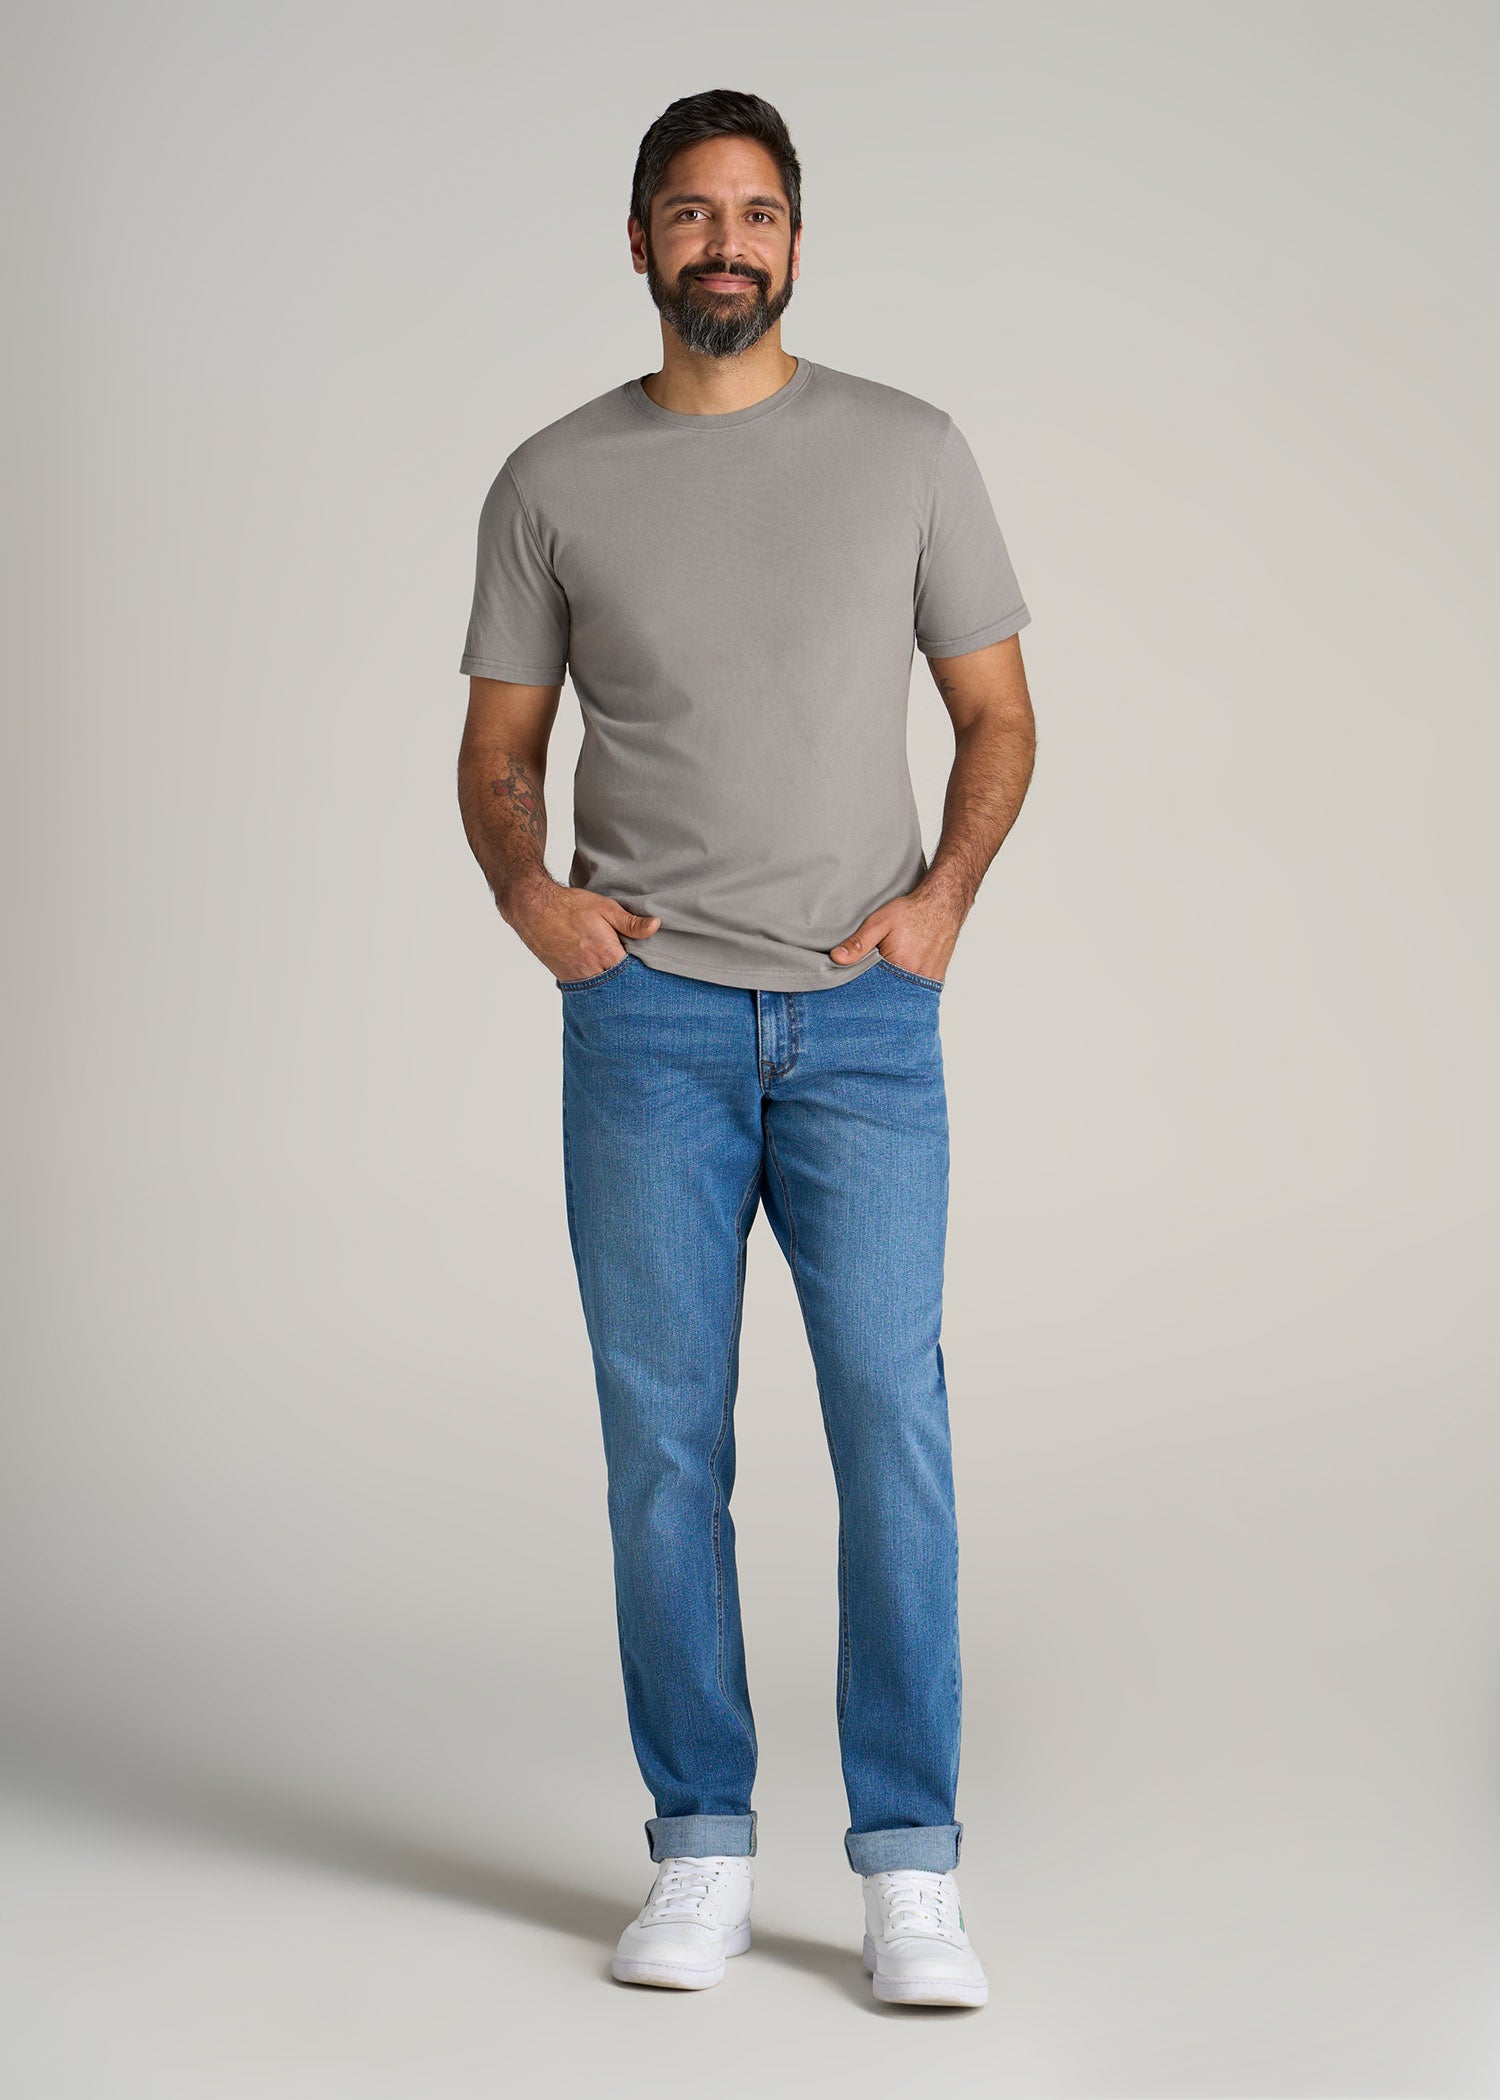 A.T. Performance MODERN-FIT Raglan Short sleeve Tee for Tall Men in Tech  Blue Mix